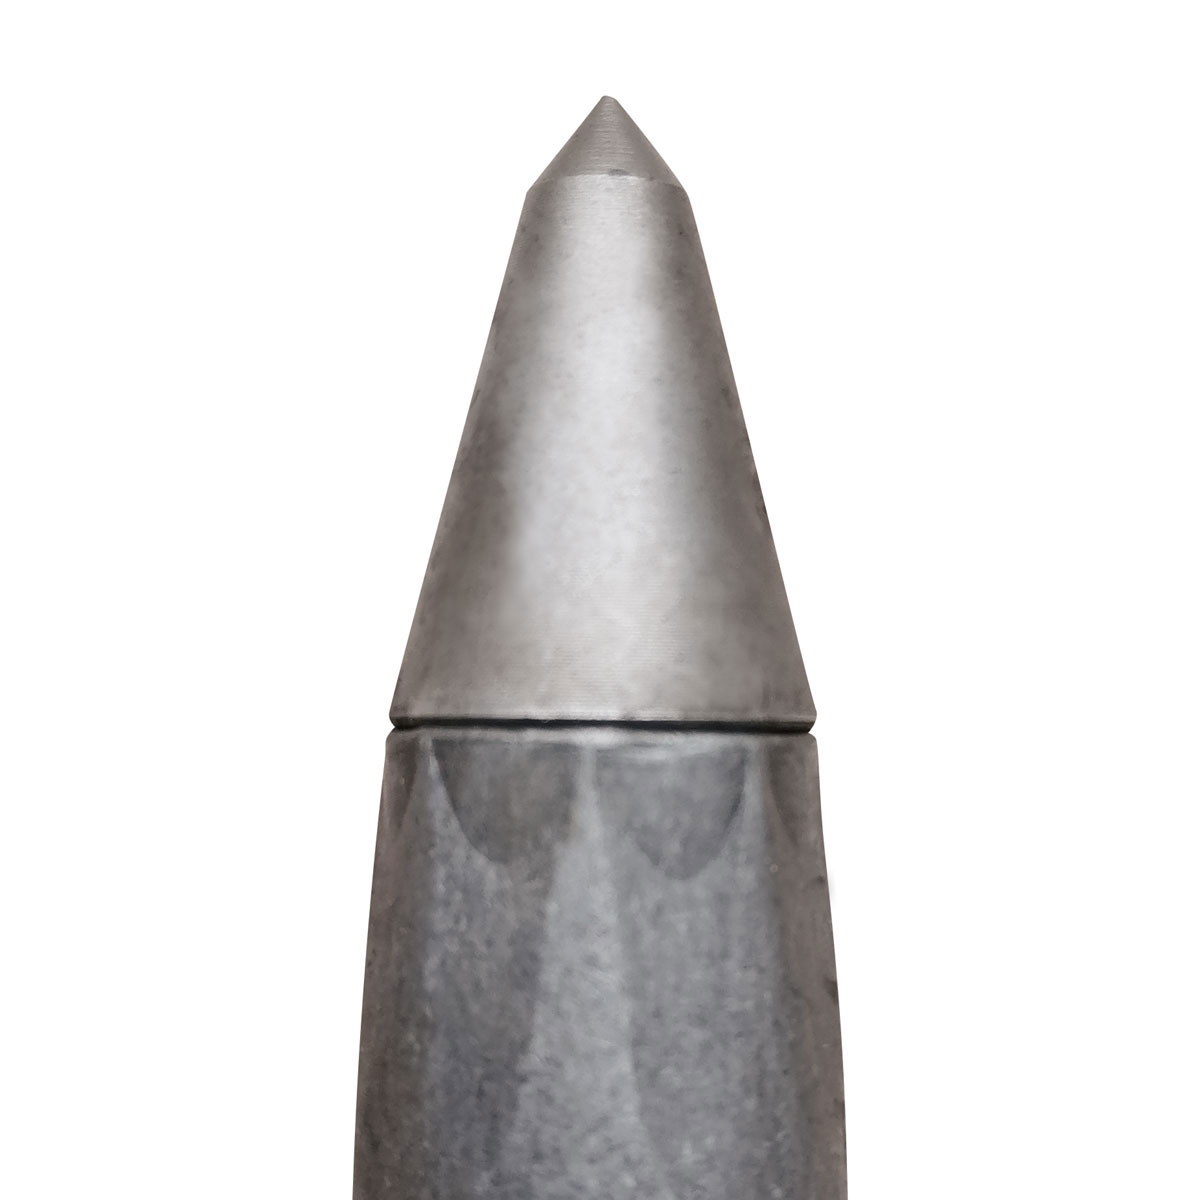 Eisenvermessungsrohre 3/8" - Länge 100 mm mit Stahlspitze